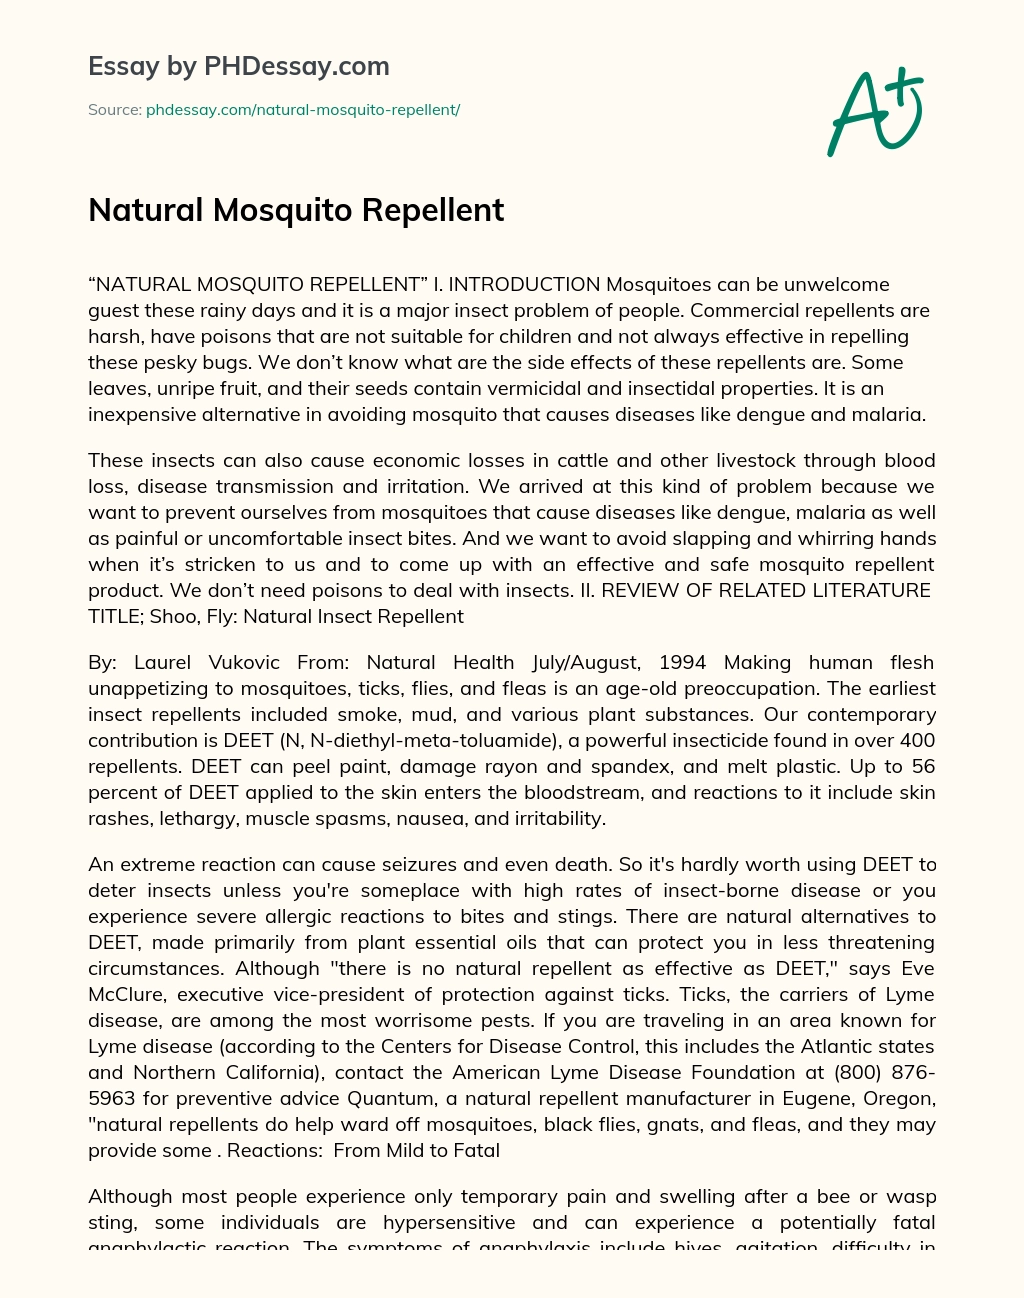 Natural Mosquito Repellent essay